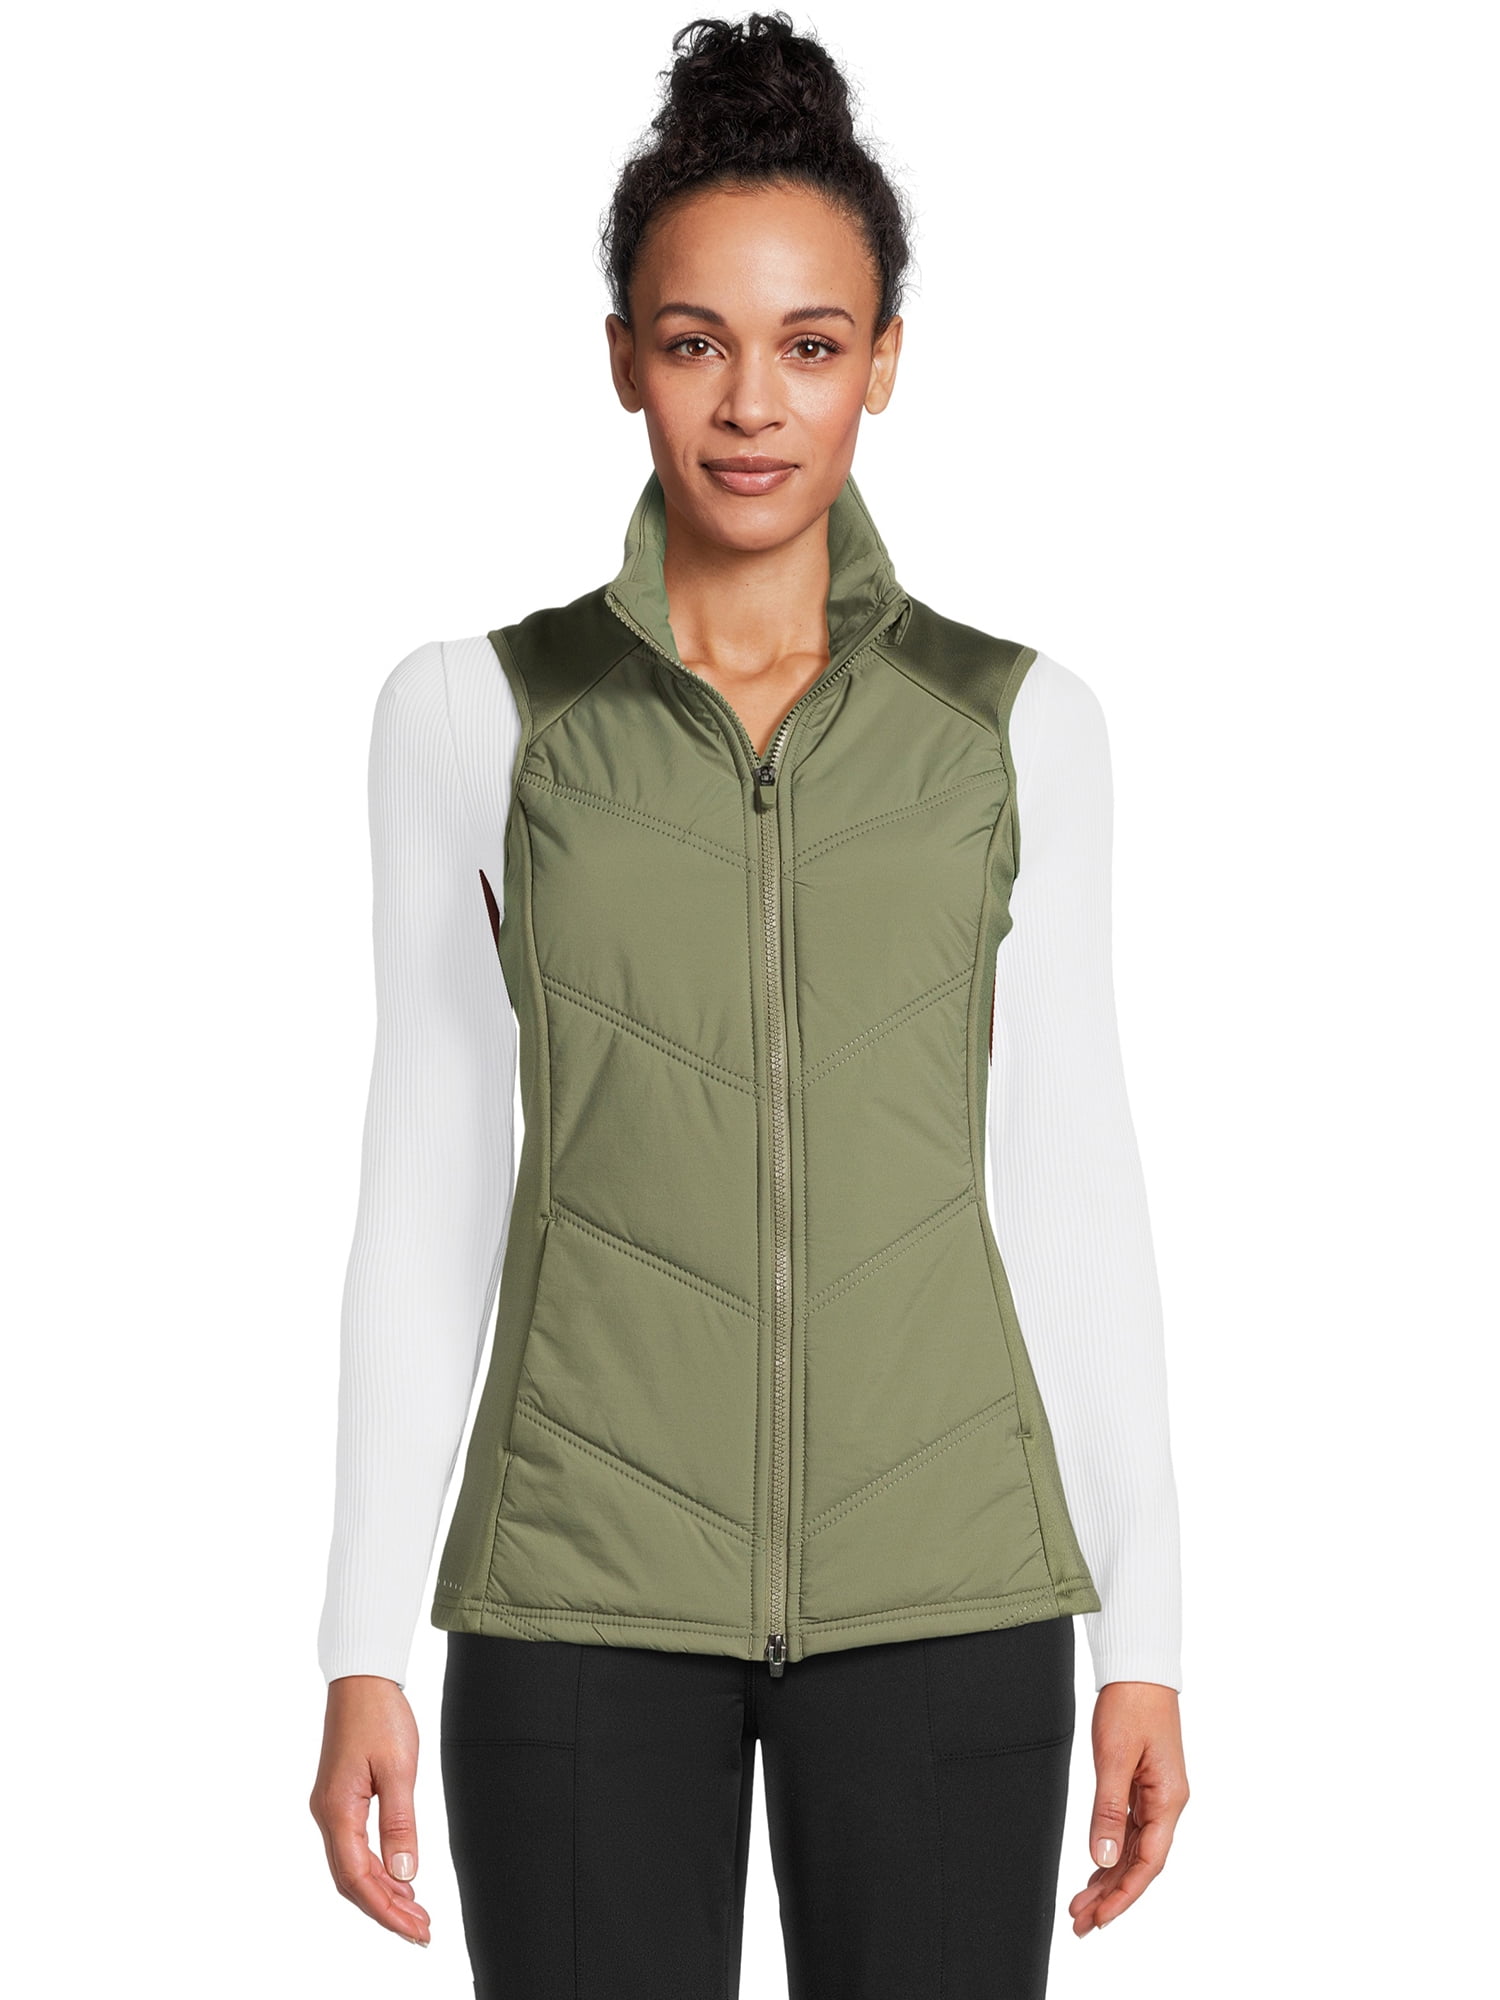 Avia Women’s Quilted Vest with Pockets, Sizes XS-XXXL - Walmart.com